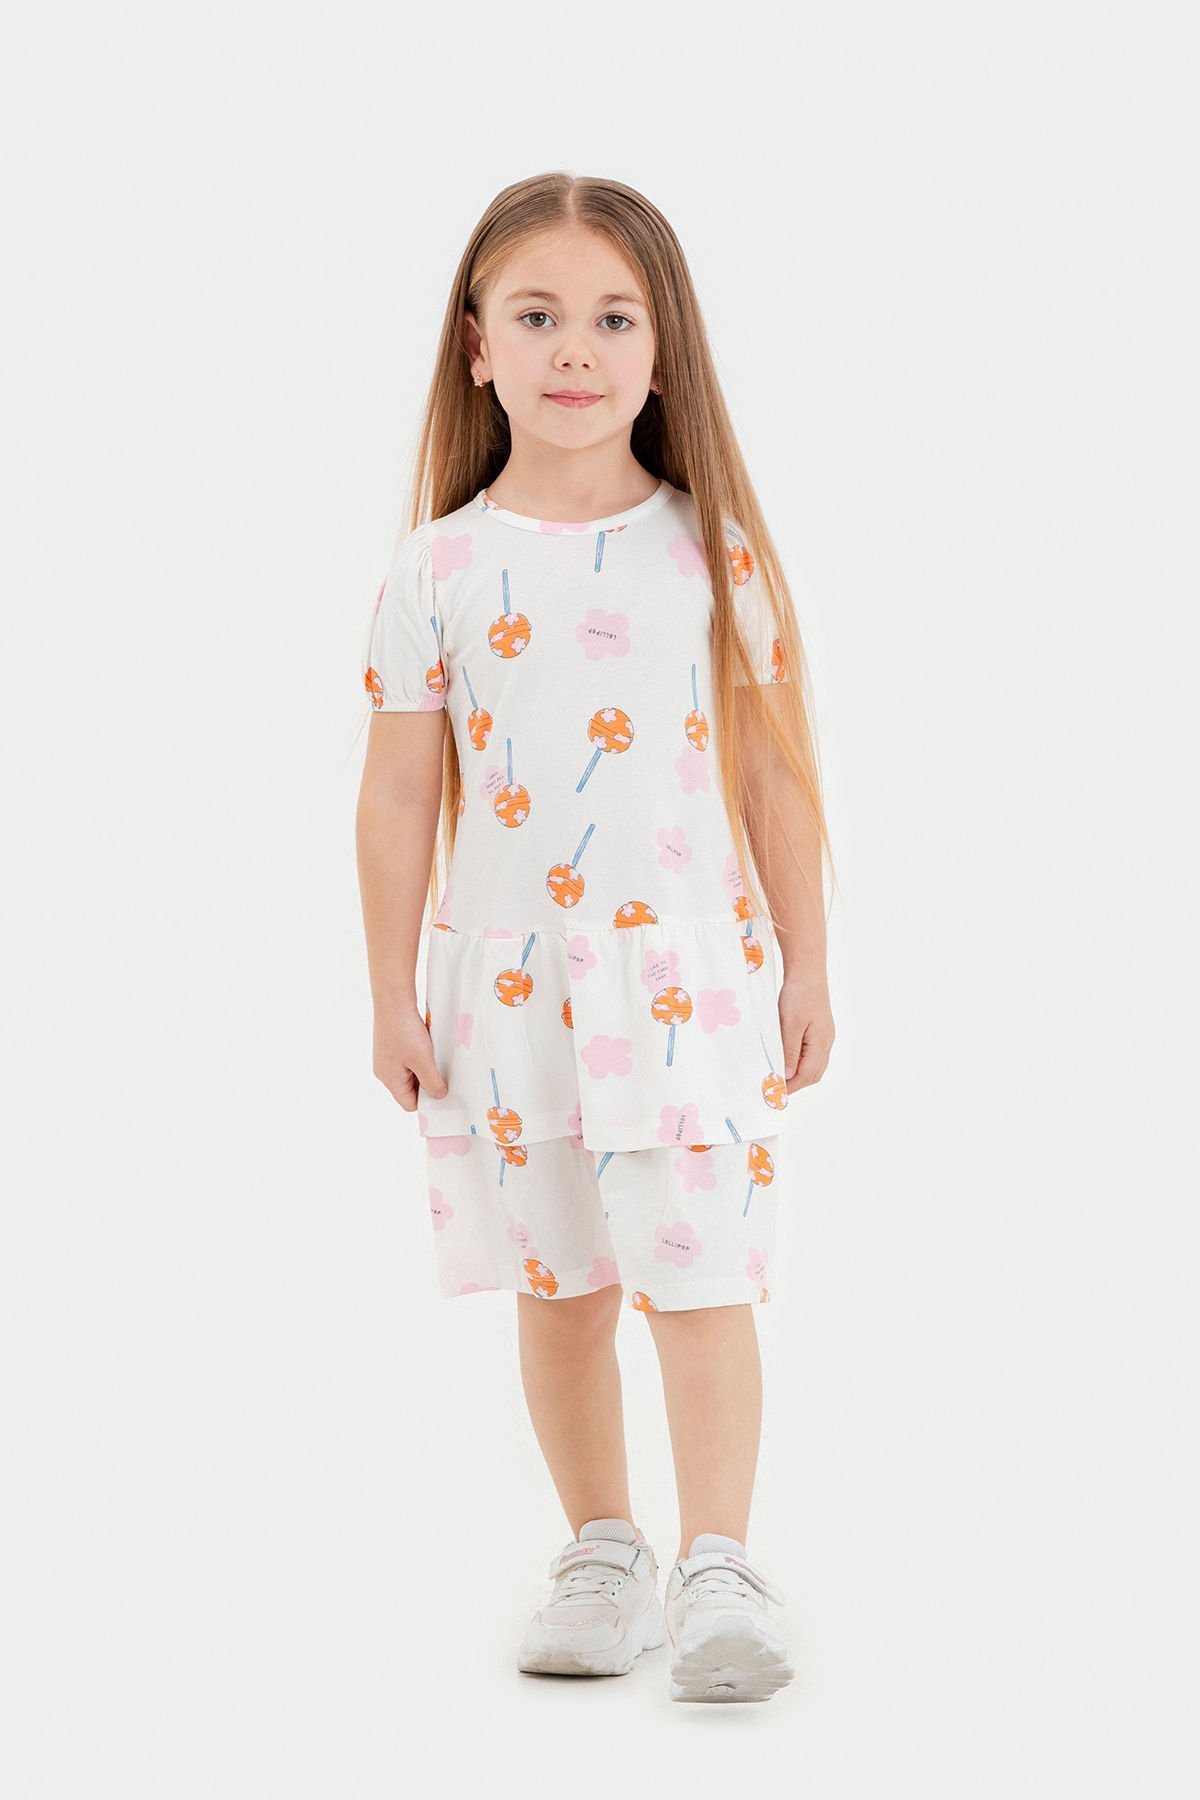 Tuffy Farklı Temalı Kız Çocuk Elbise-1258